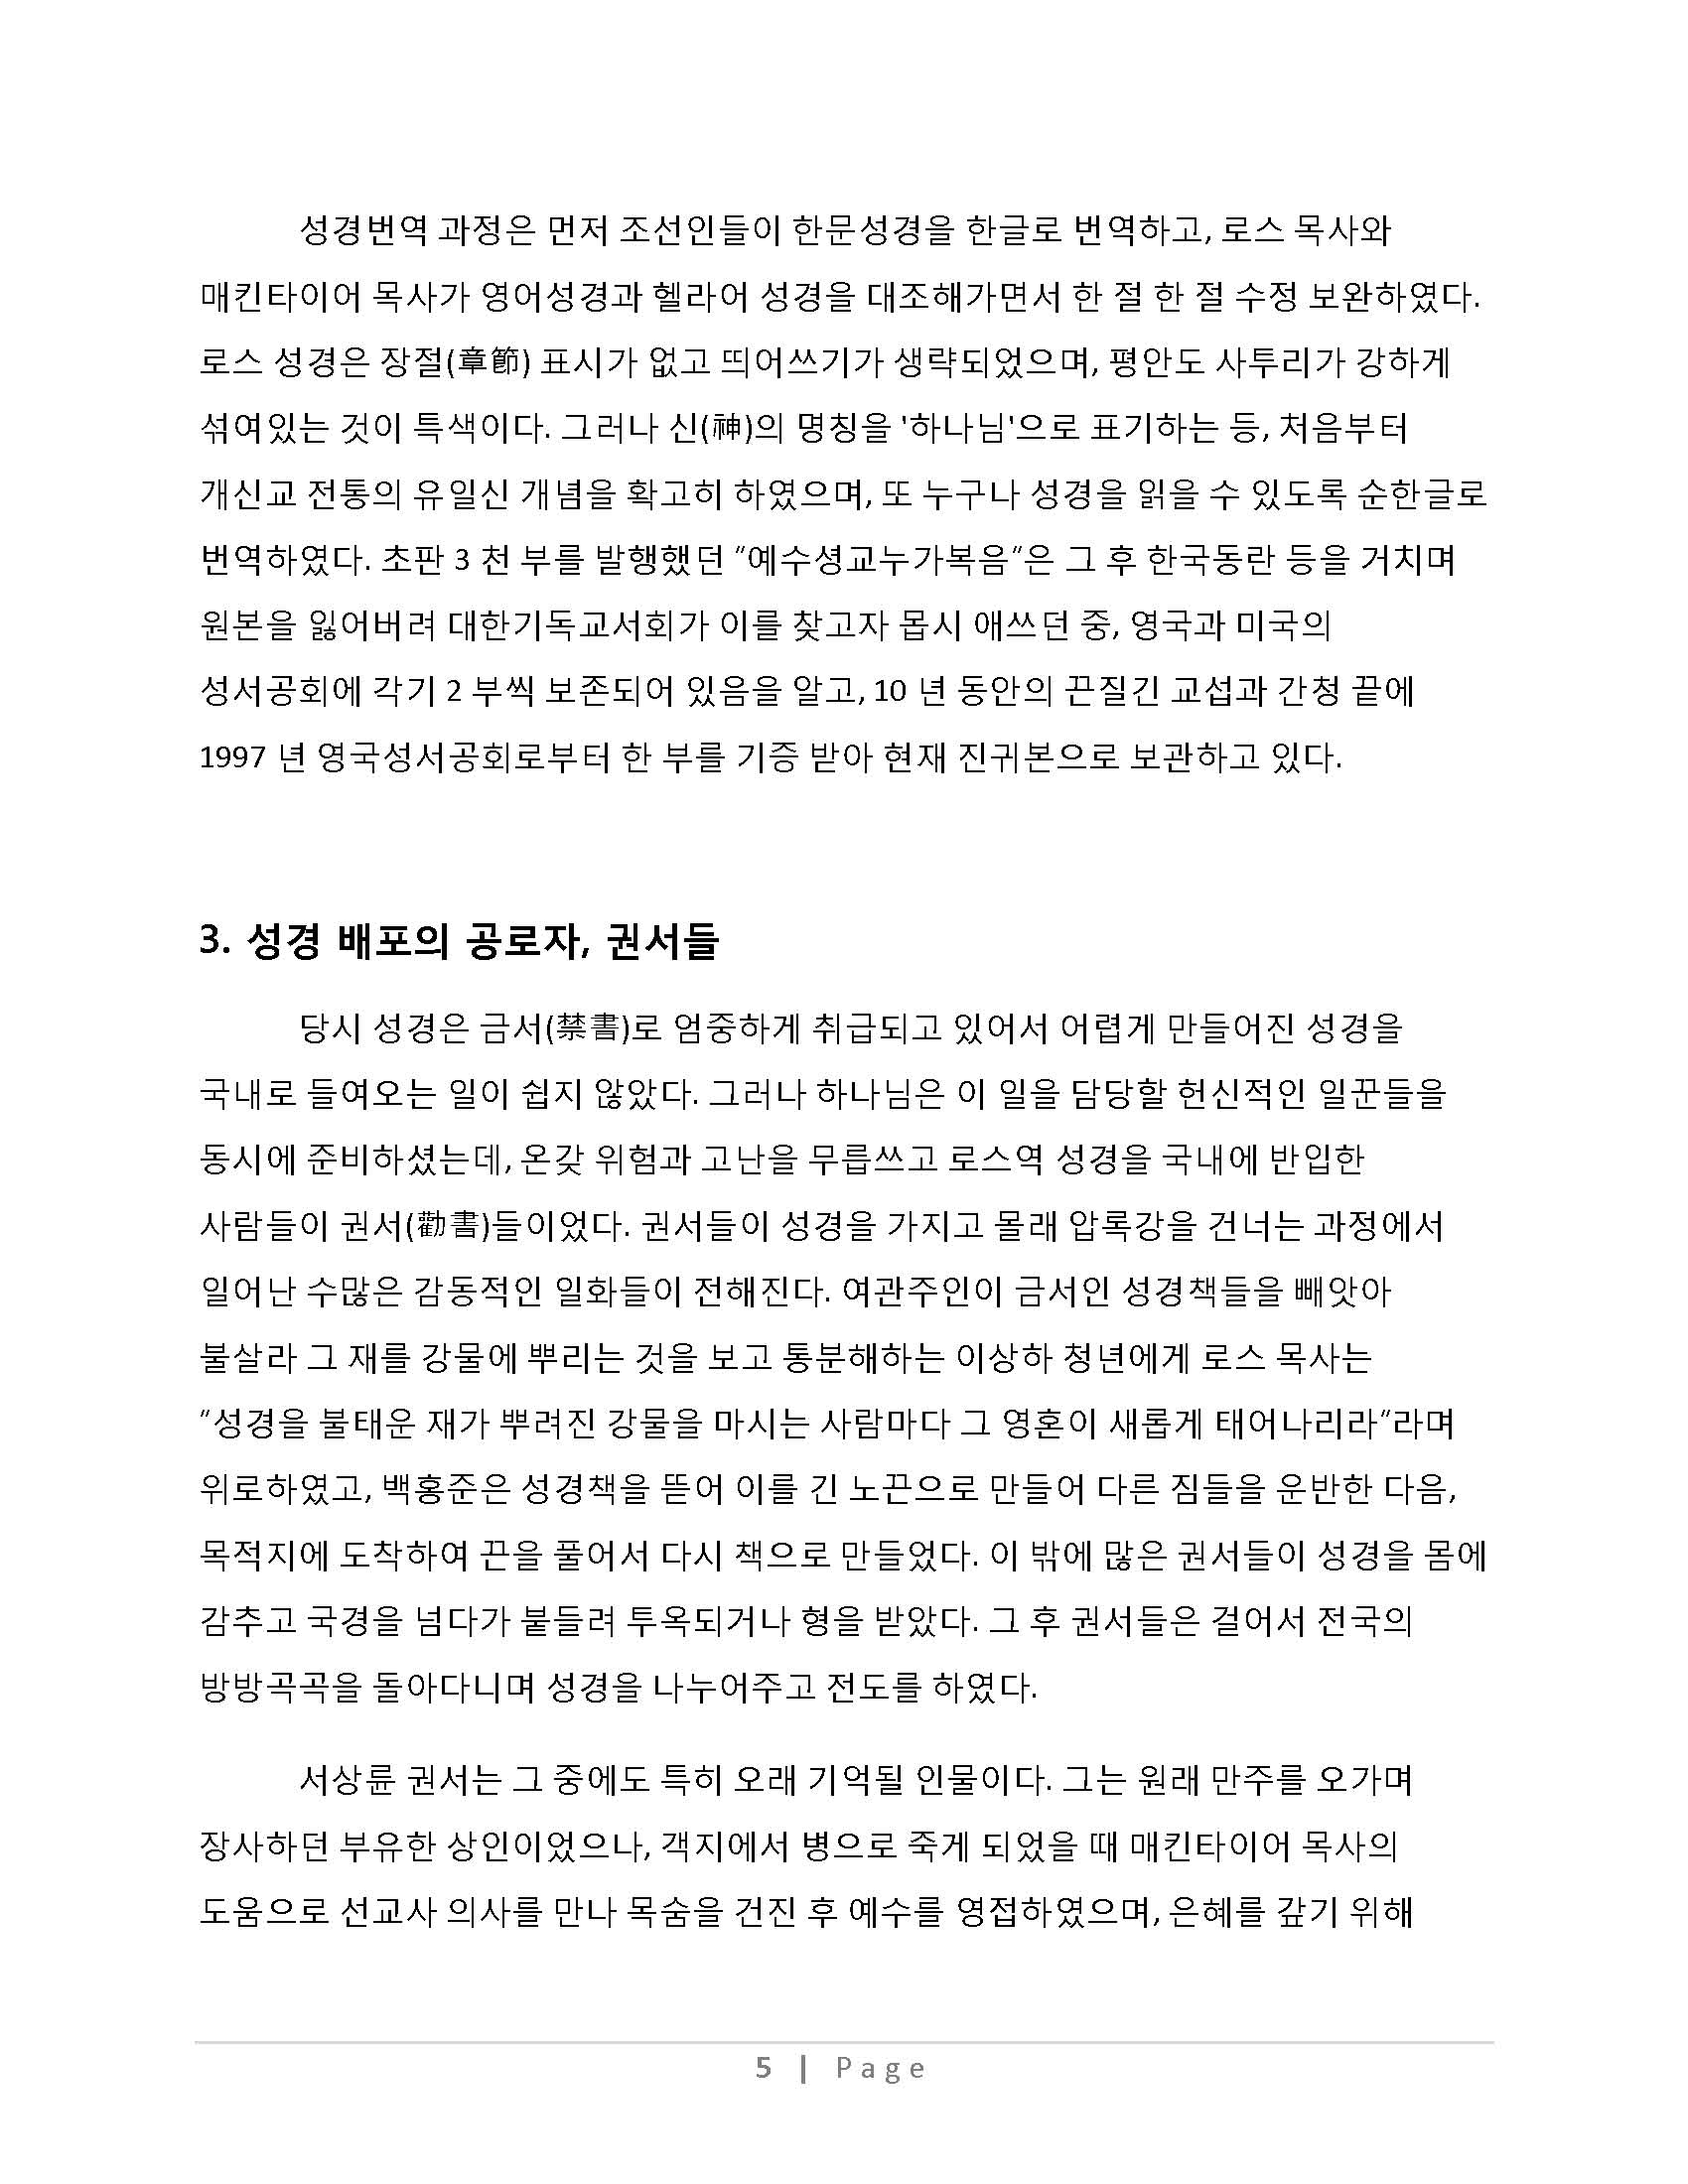 한국성경 번역의 역사_Page_15_Page_05.jpg